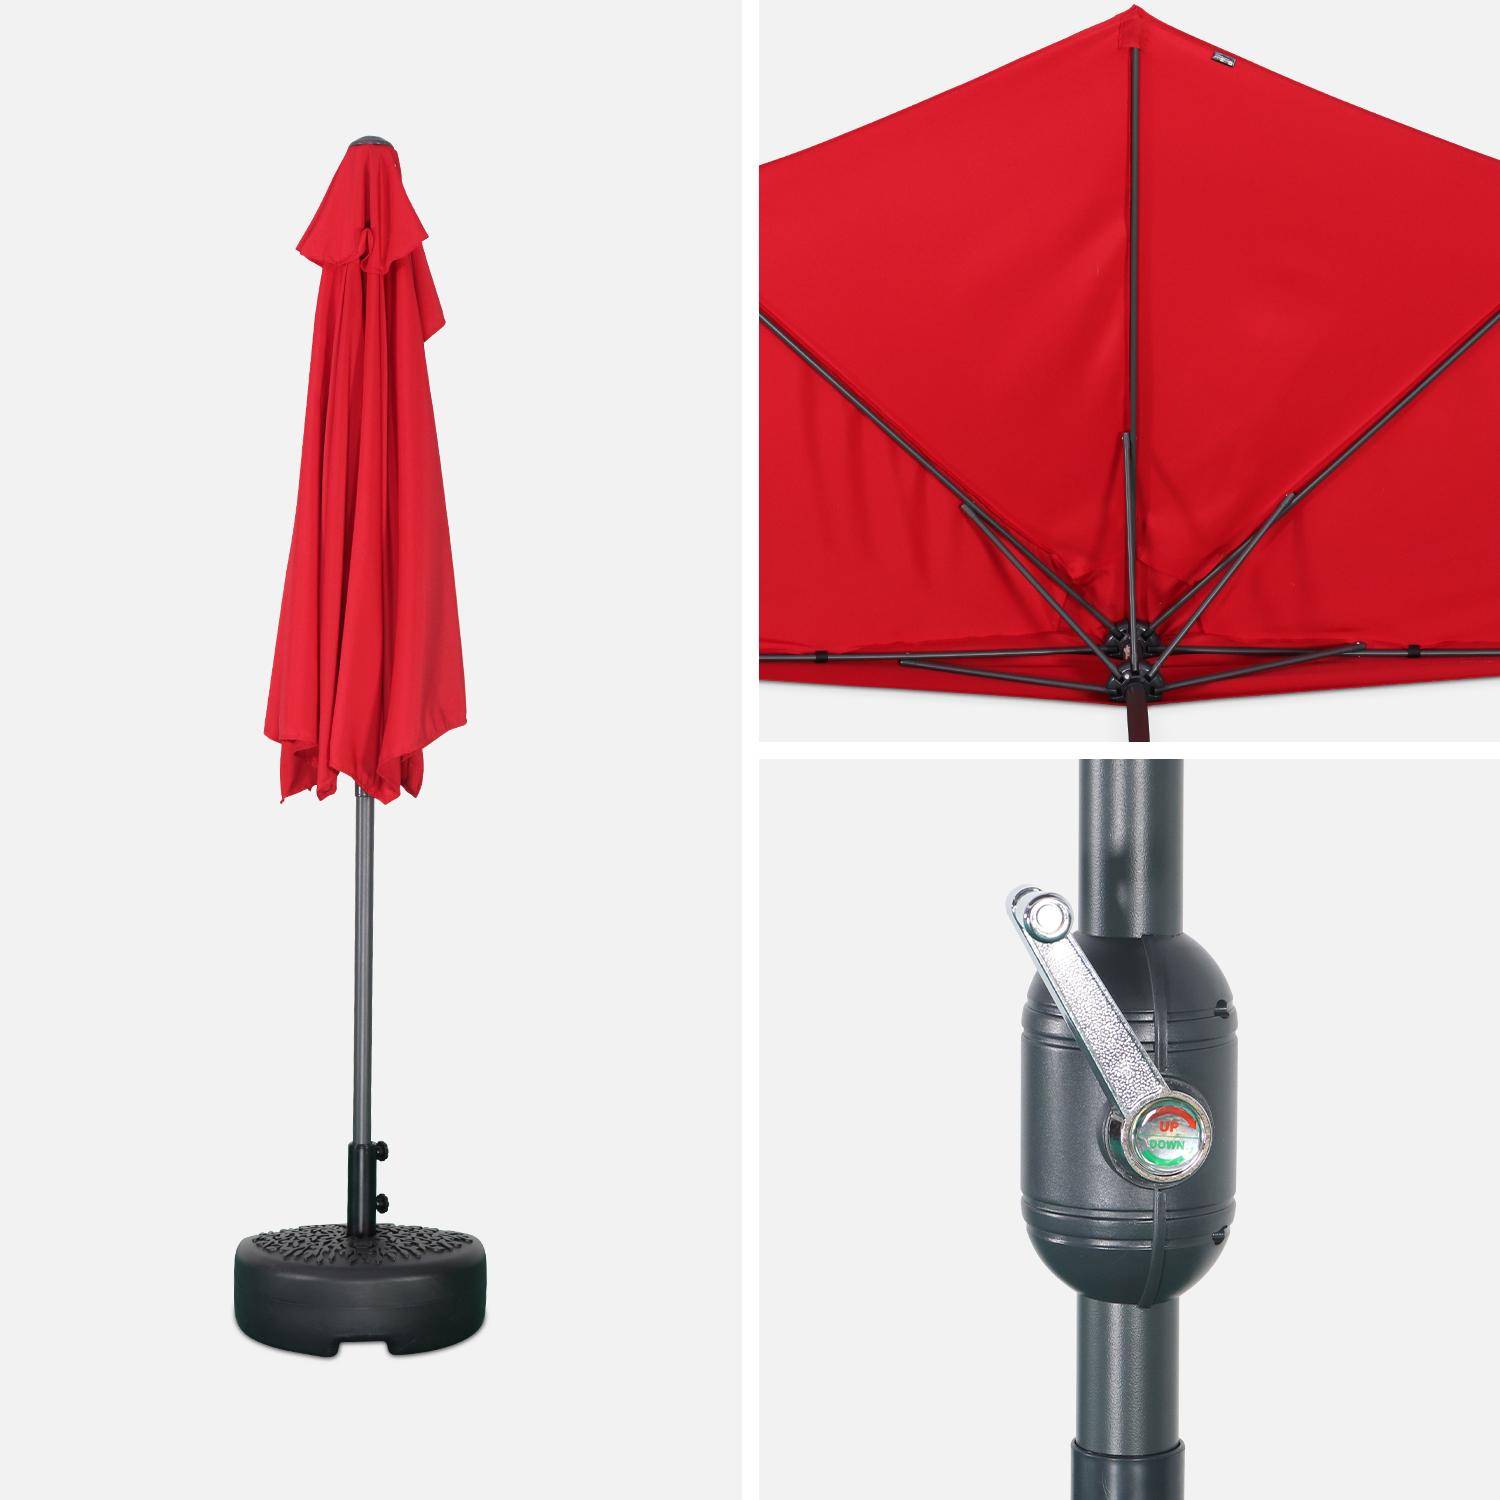  Parasol para balcón Ø250cm  – CALVI – Pequeño parasol recto, mástil en aluminio con manivela, tela color rojo Photo4